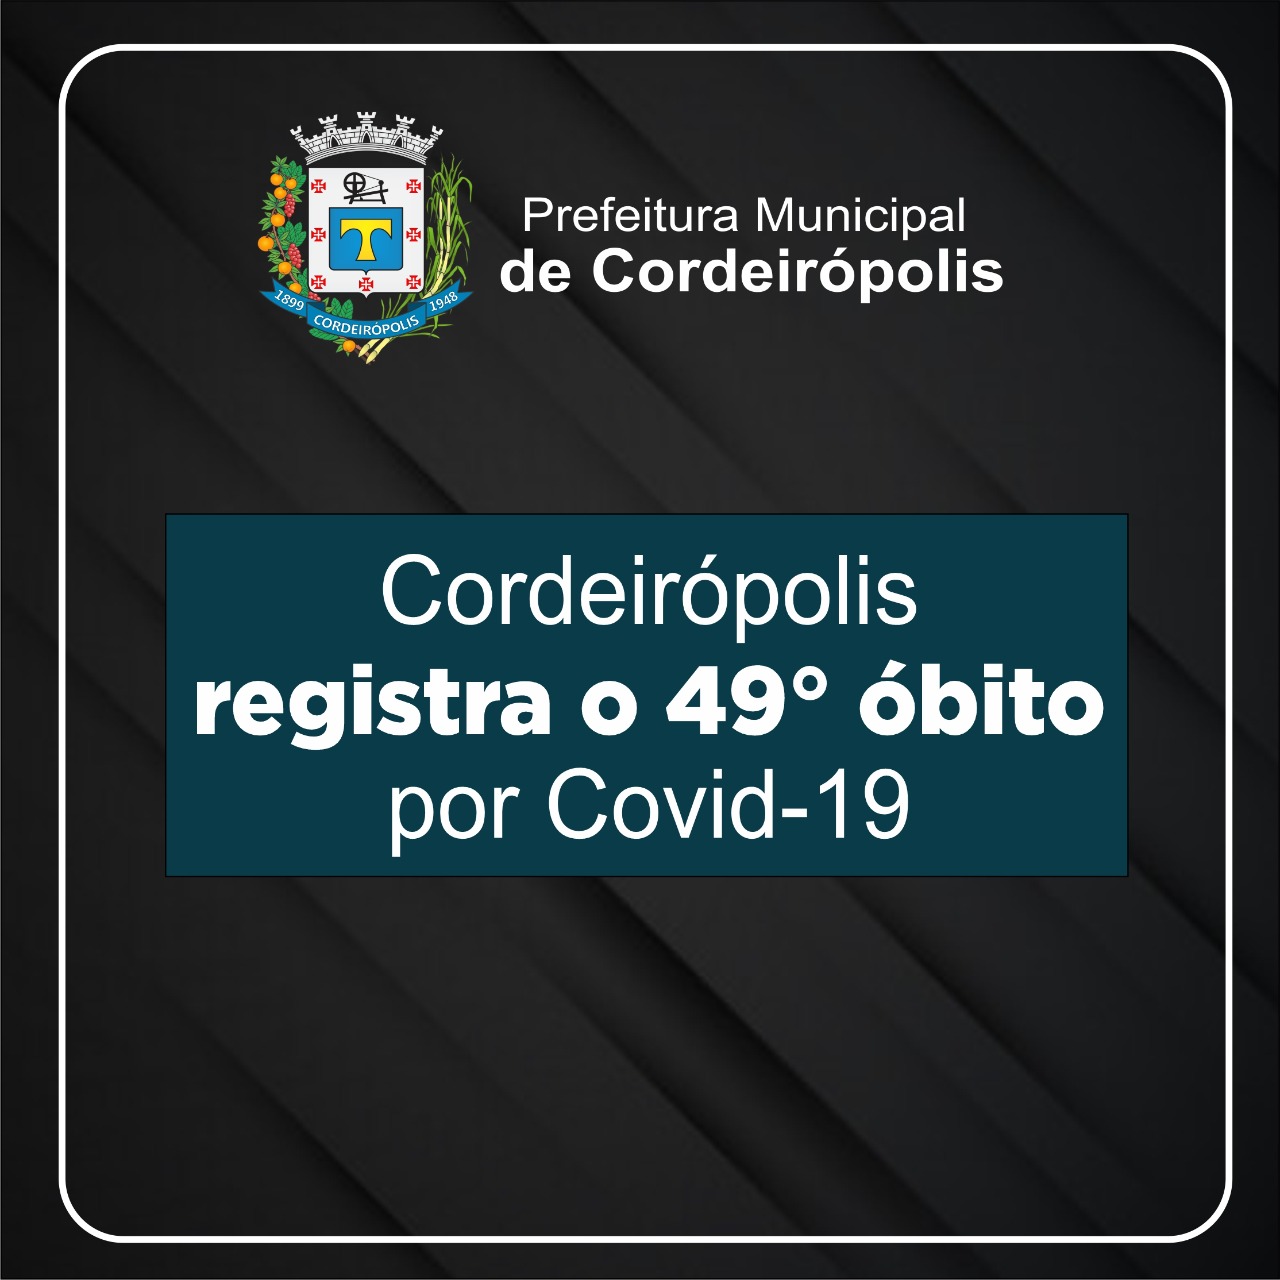 Cordeirópolis registra o 49º óbito de Covid